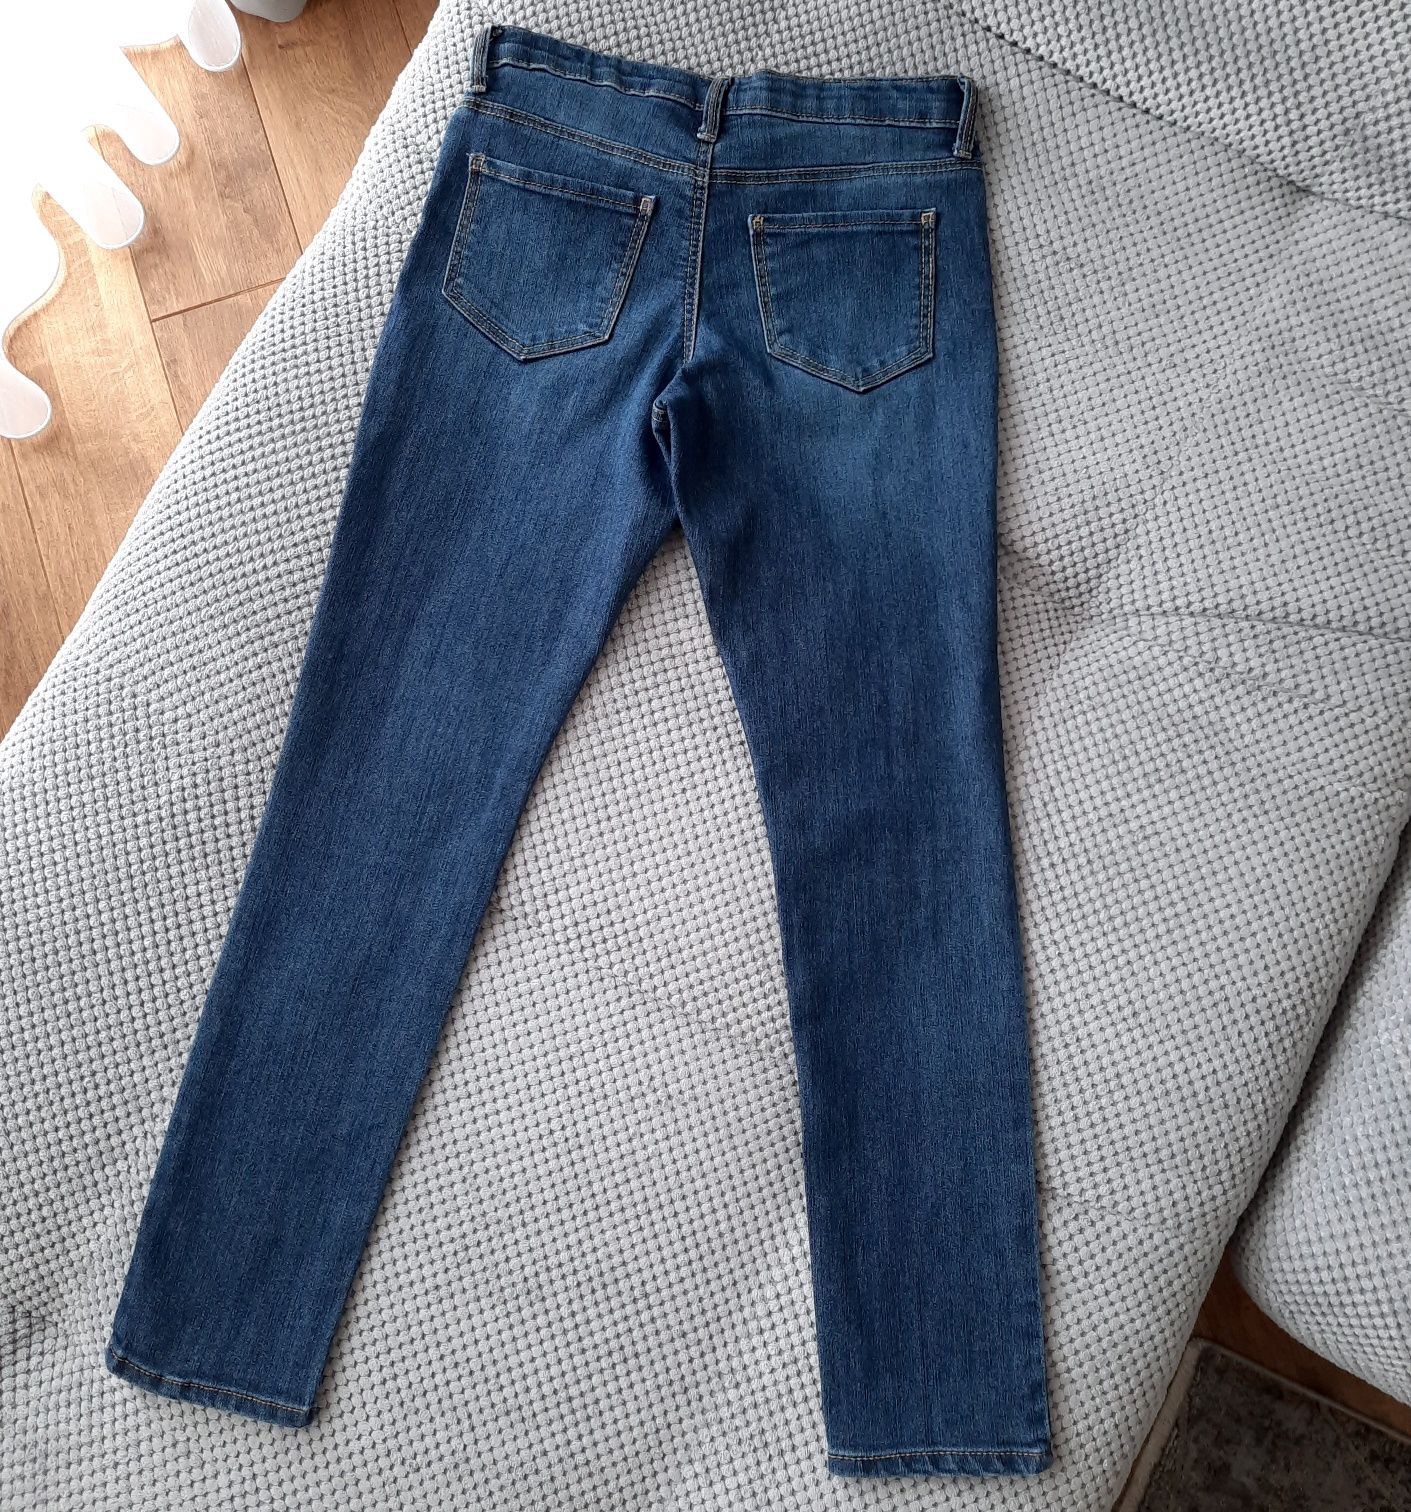 Джинси, джинсы, джегінси, брюки oshkosh b'gosh super skinny на 8р.